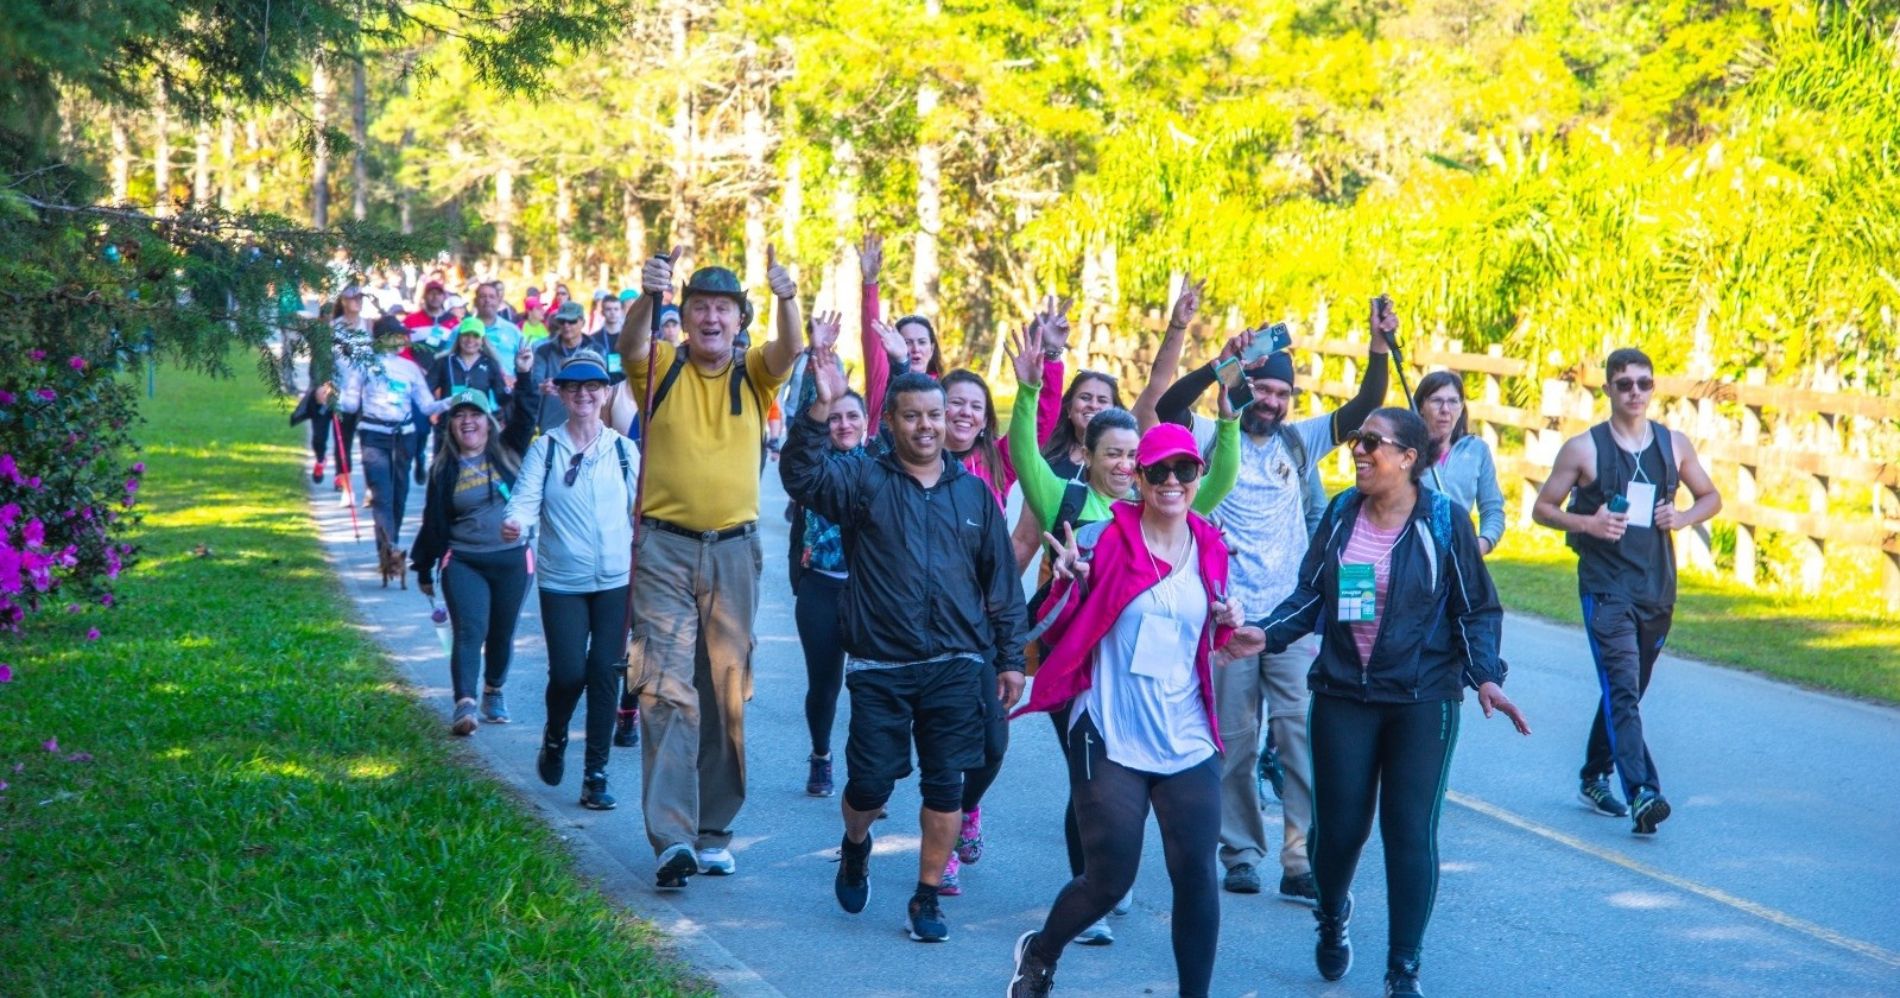 Caminhada comemorativa aos 150 anos da Estrada da Graciosa reúne mais de mil participantes